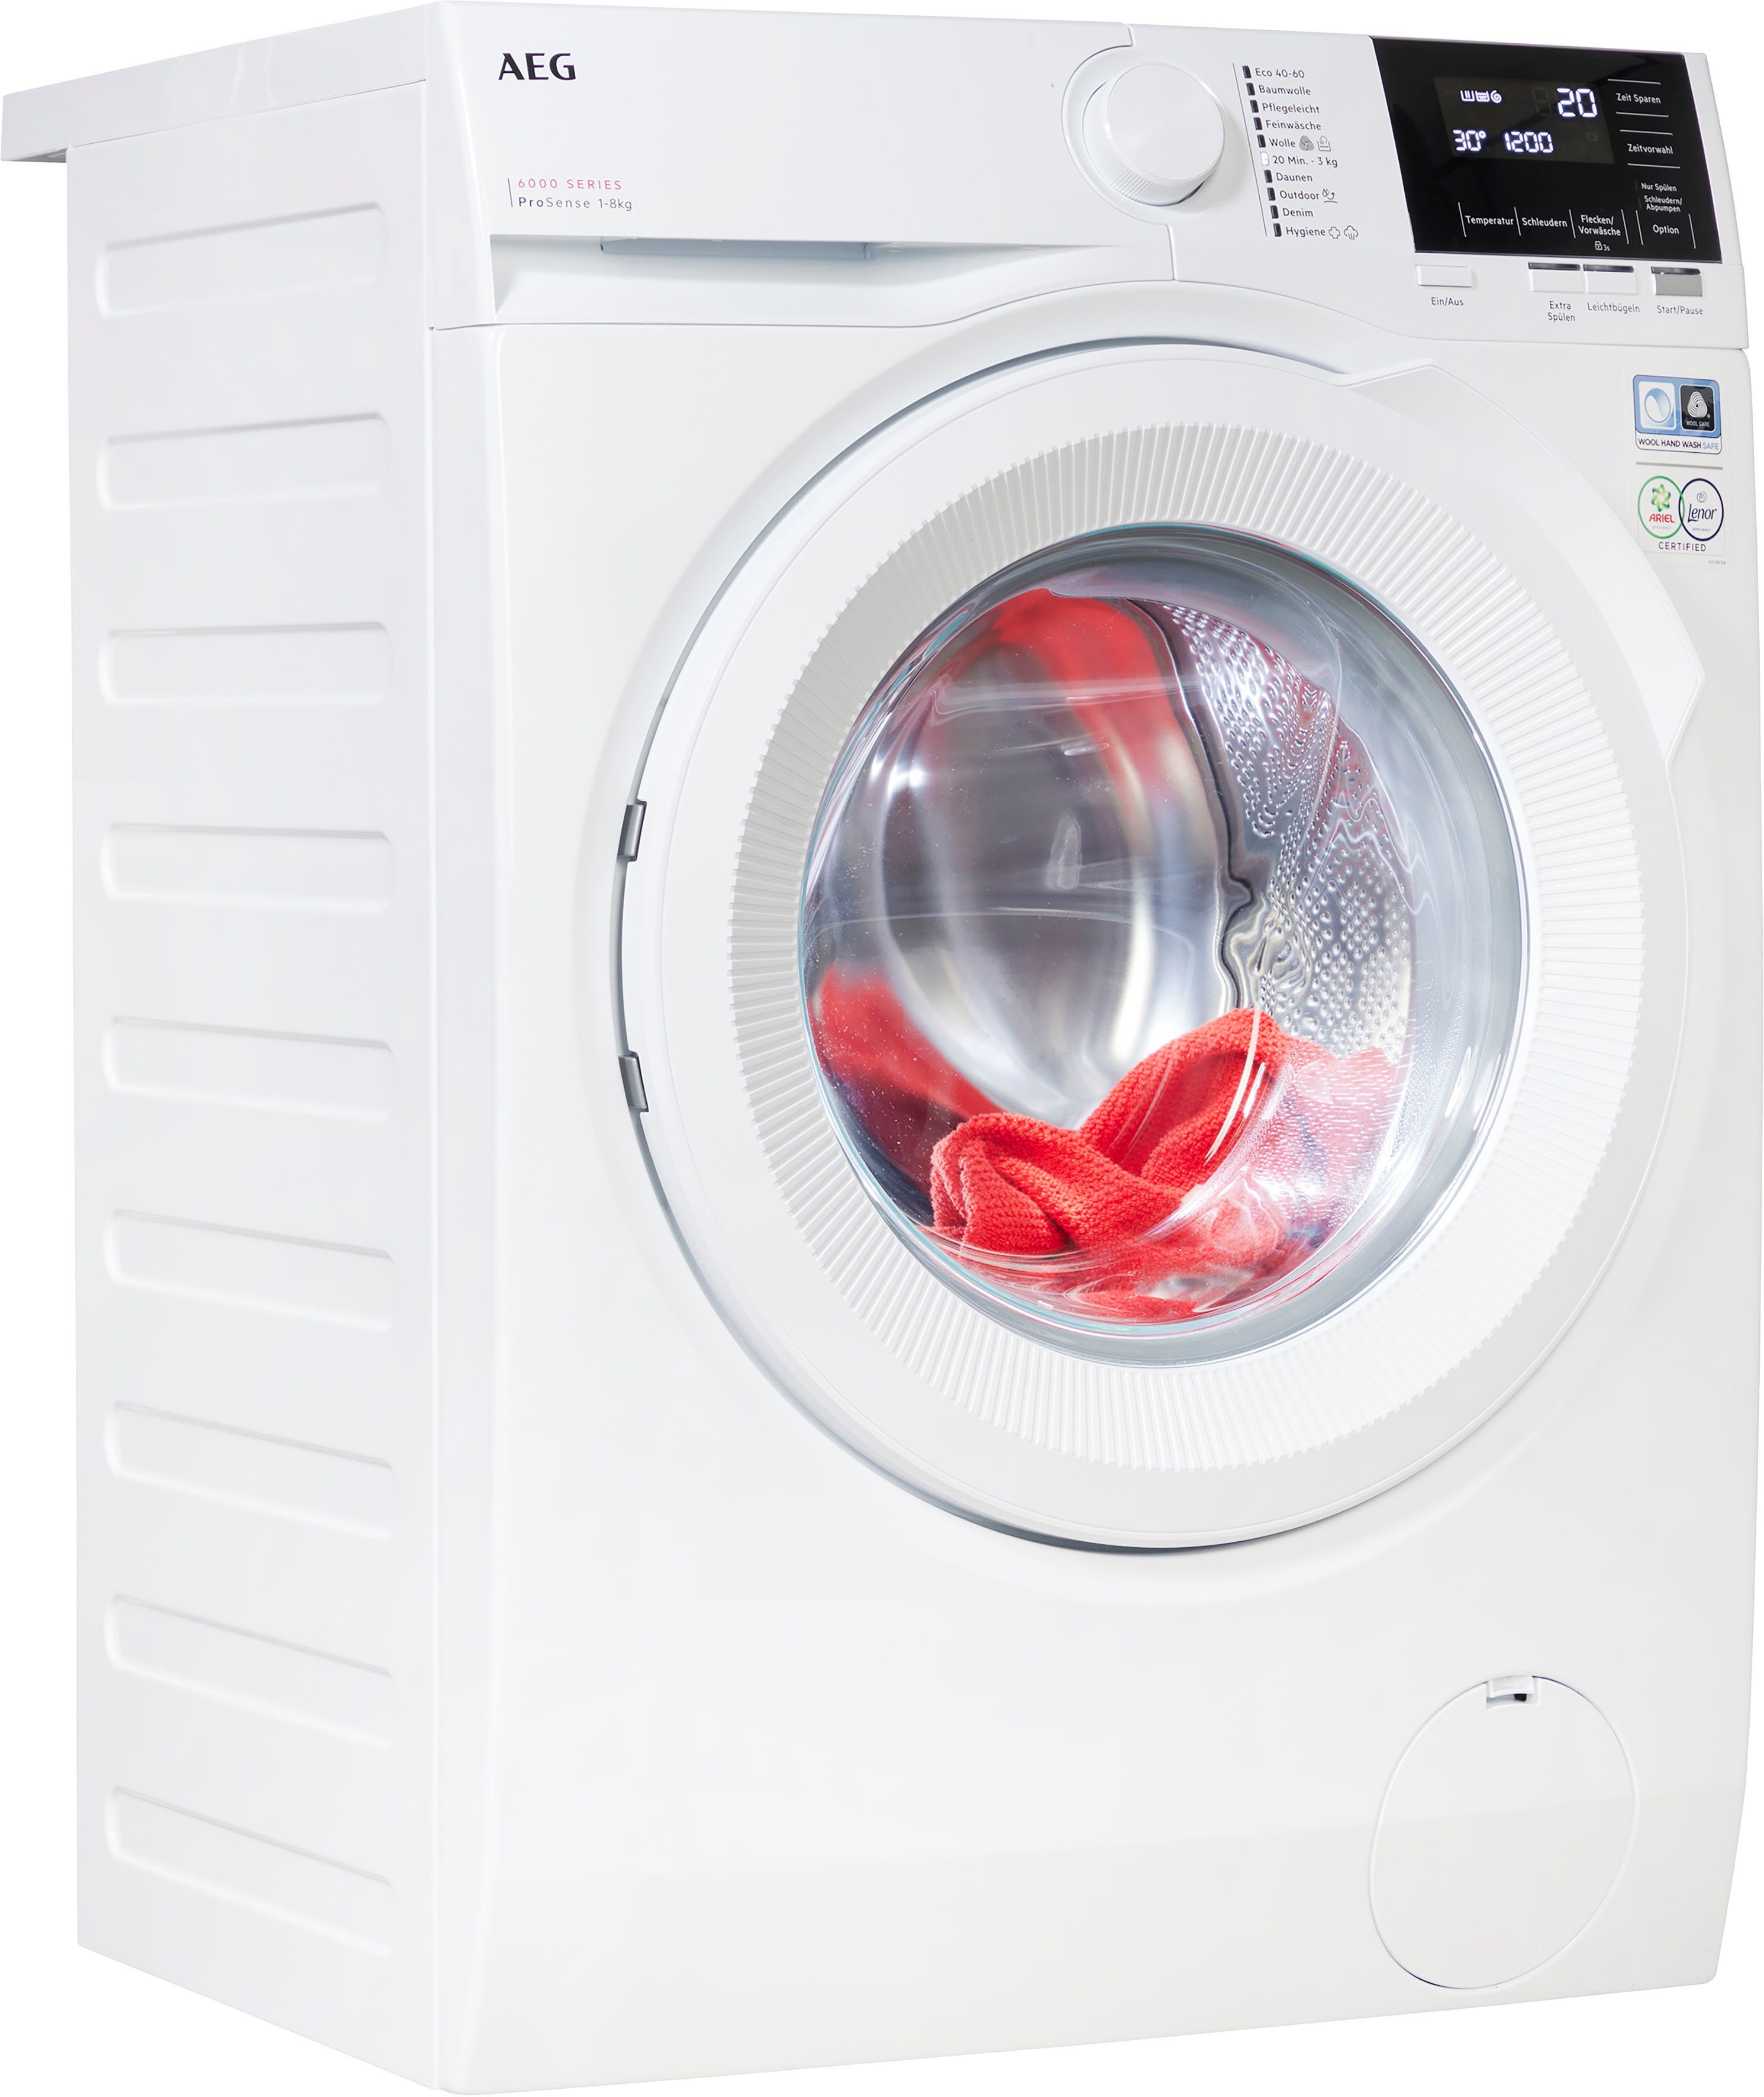 AEG Waschmaschine 6000 LR6A648, 8 kg, 1400 U/min, ProSense® Mengenautomatik​  - spart bis 40% Zeit, Wasser und Energie